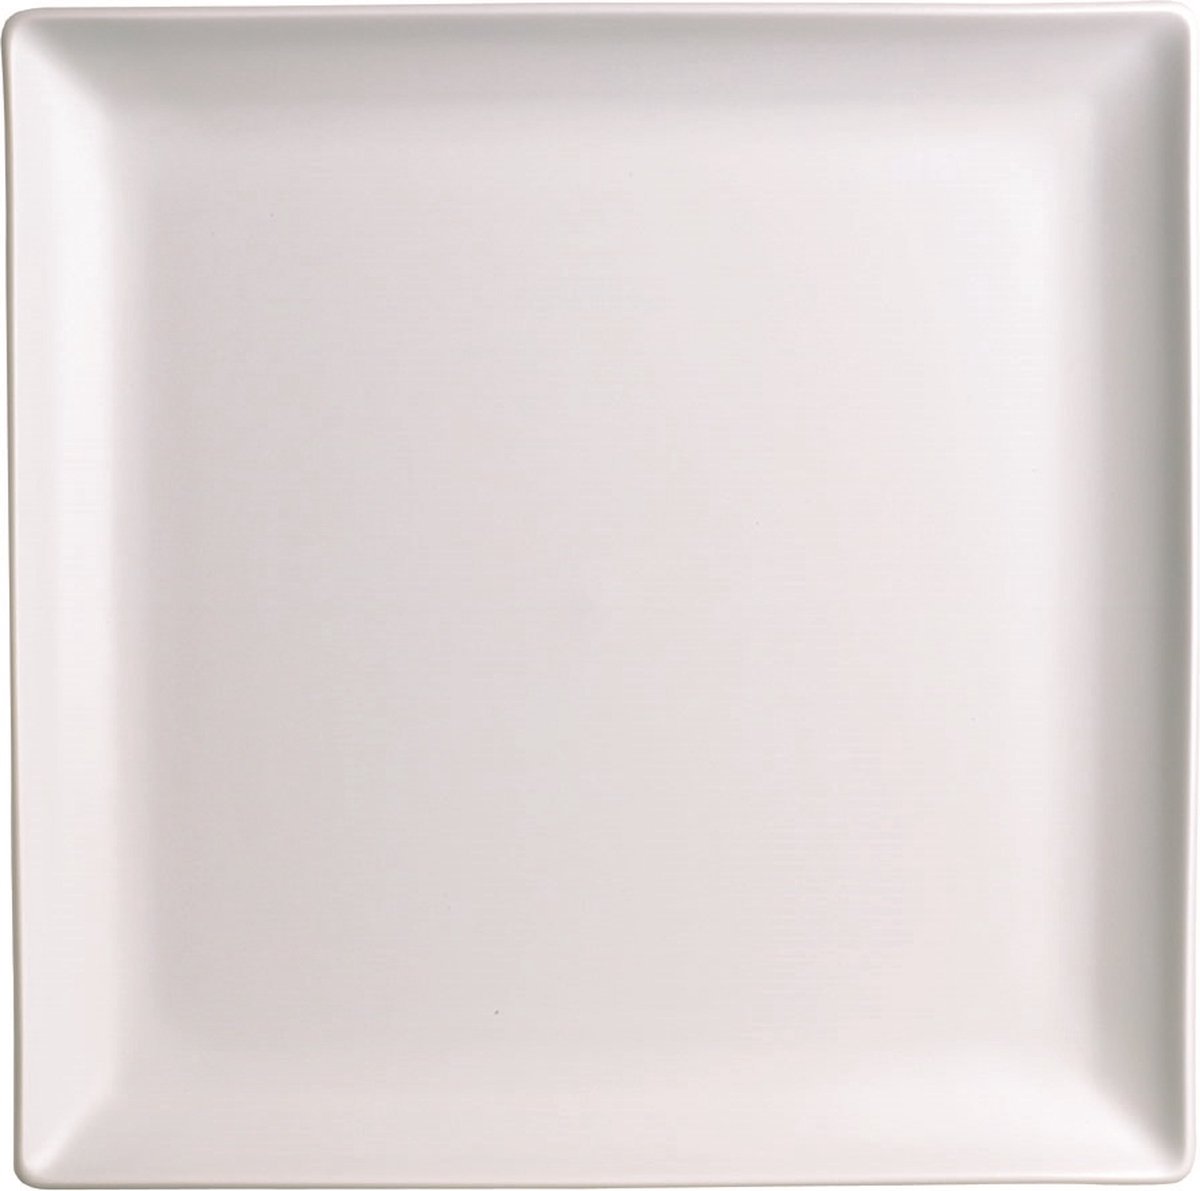 Apilco - Zen - Dinerbord - CADEAU tip - Vierkant - 27x27 cm- Wit - Porselein - Set a 6 stuks